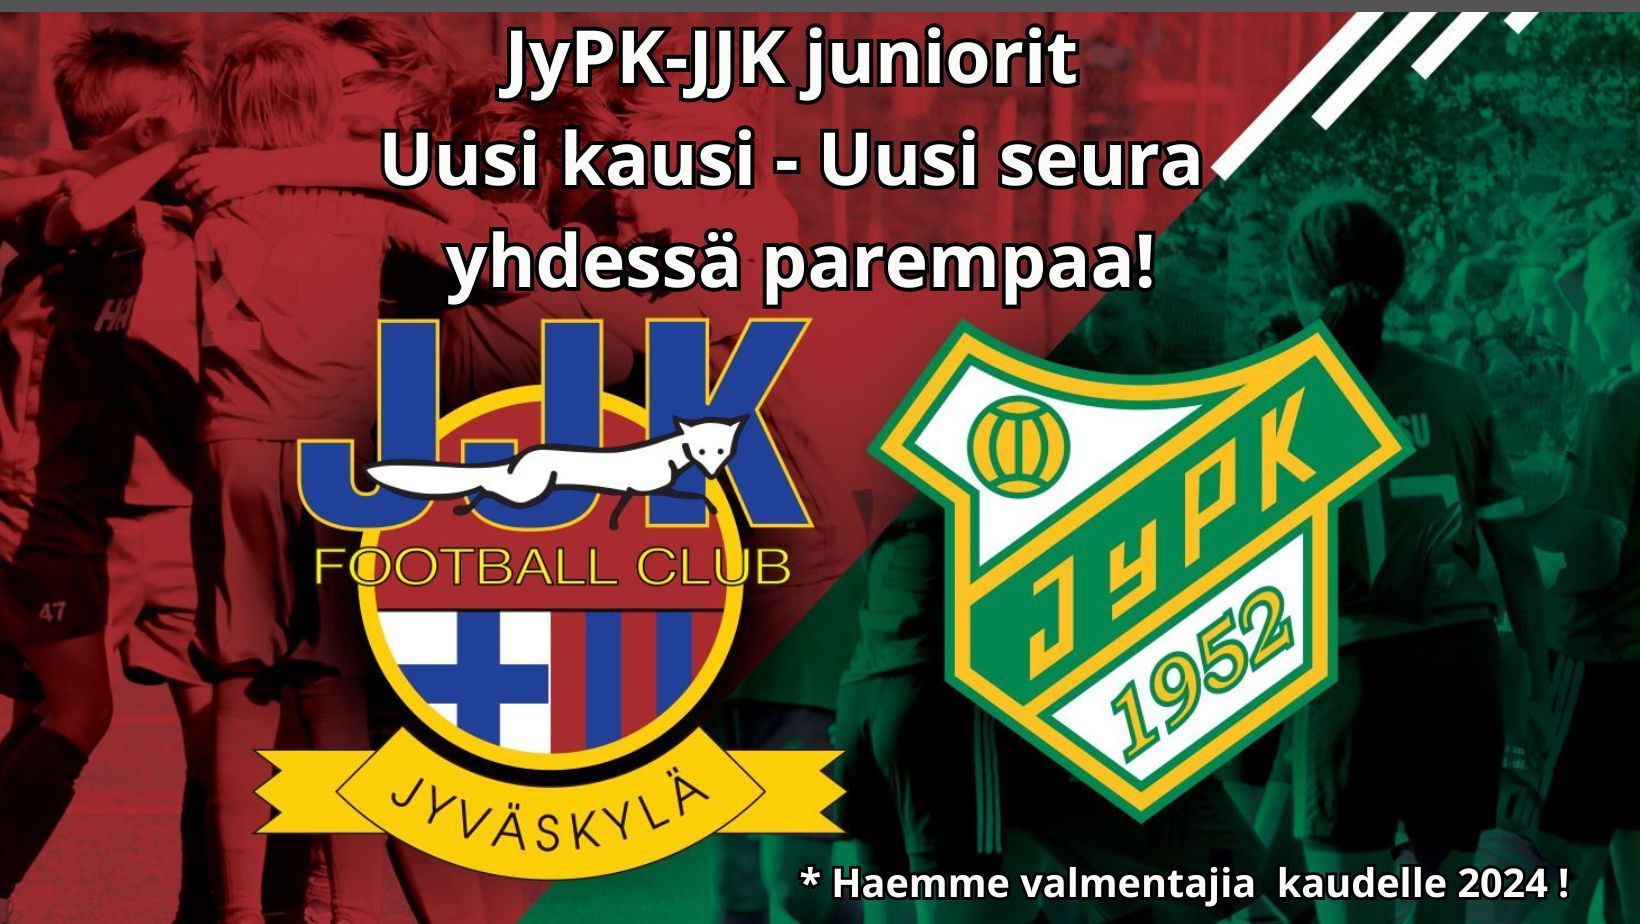 Uusi kausi - historiallinen muutos!  JyPK-JJK juniorit ry aloittaa.